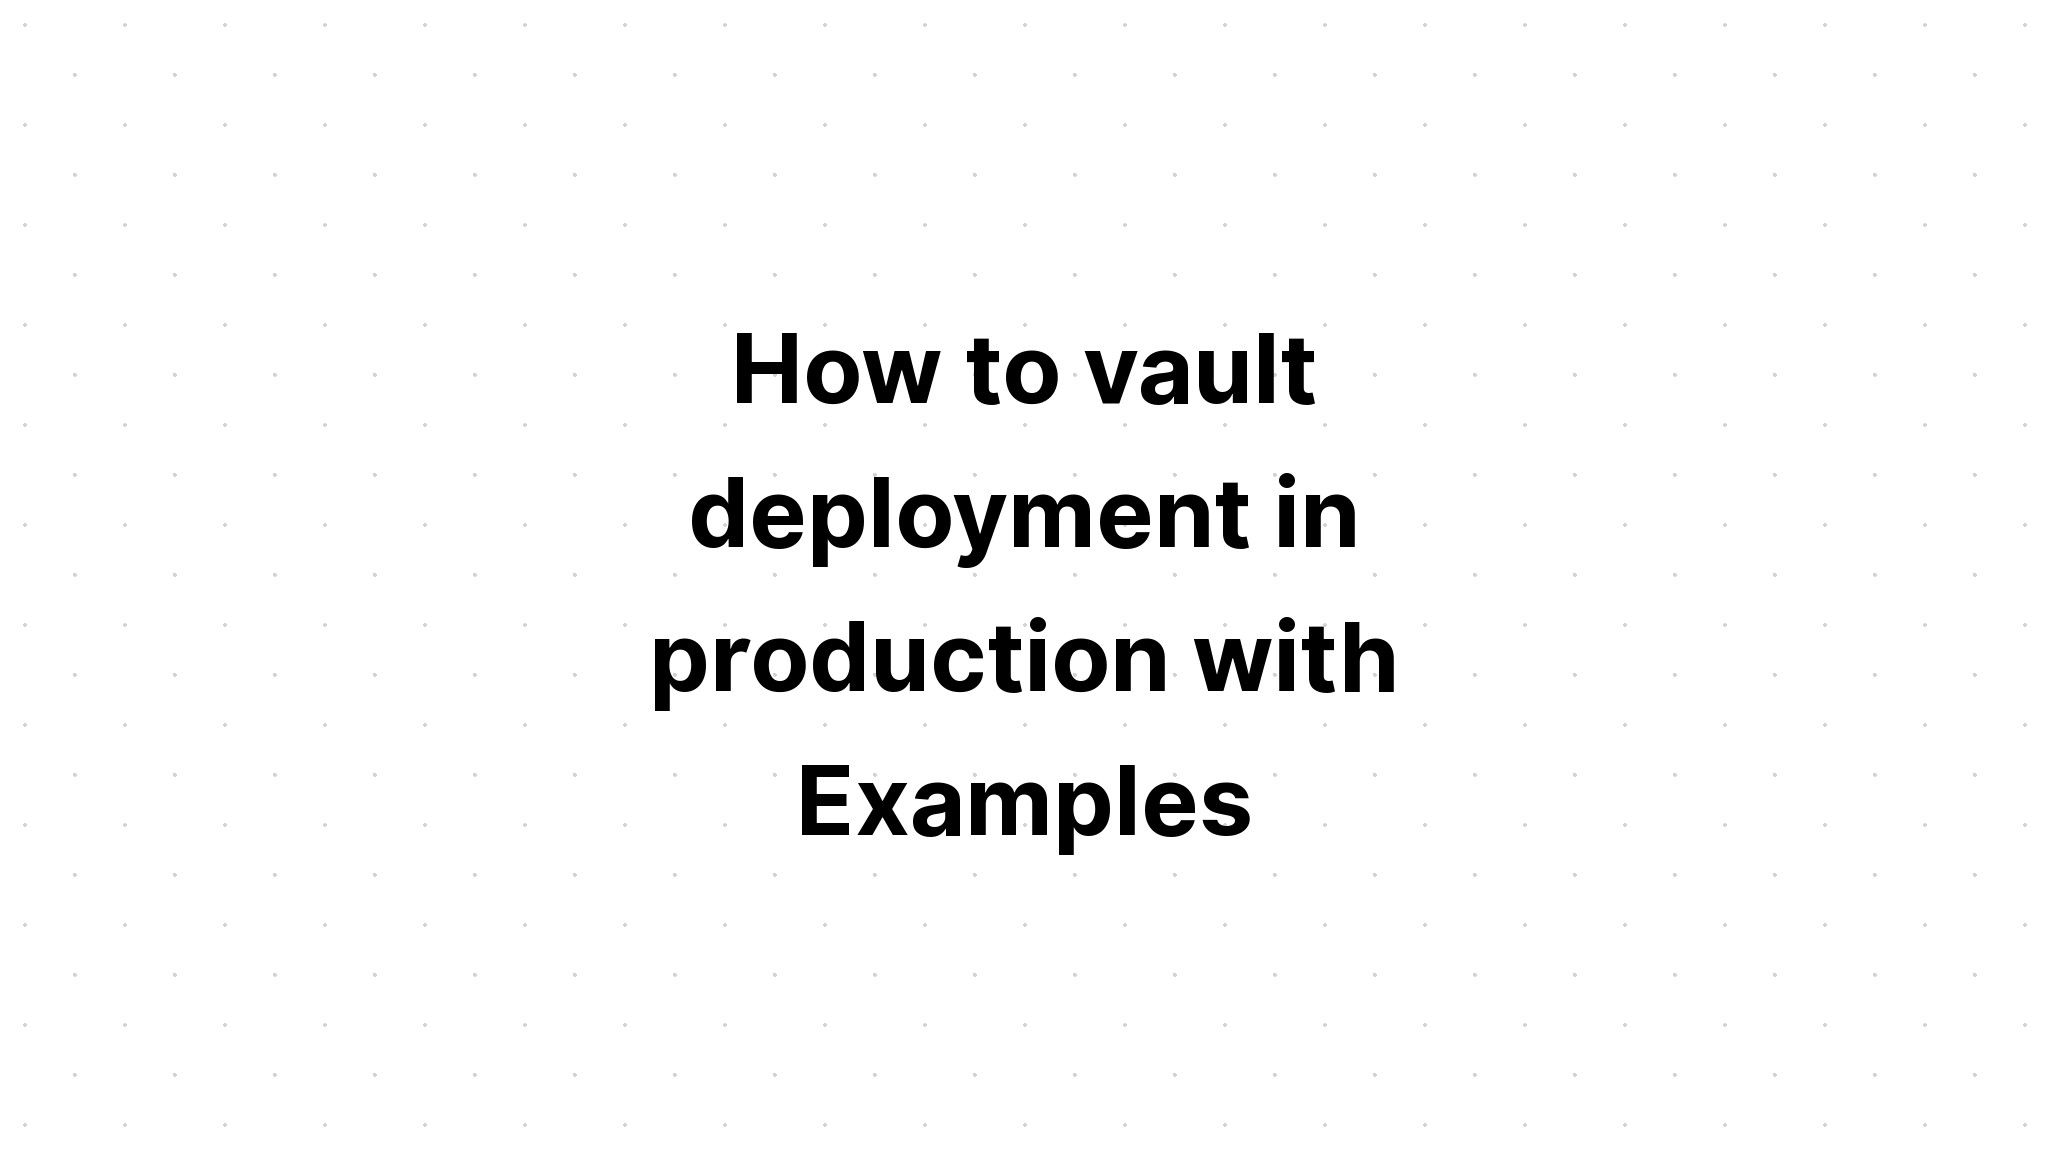 Cách triển khai vault trong sản xuất với các ví dụ